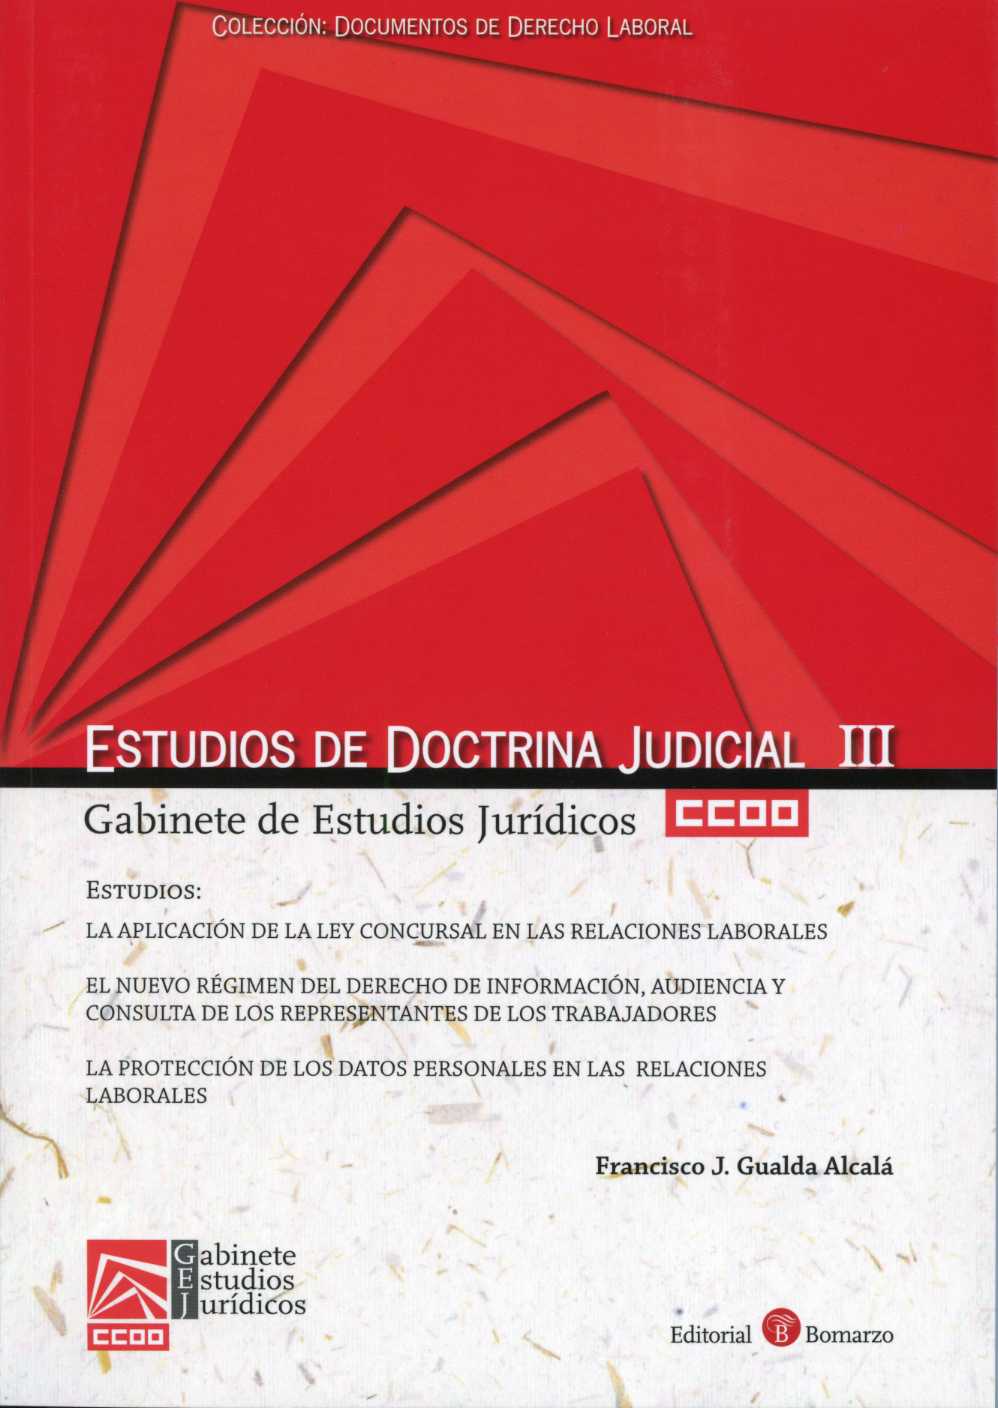 Estudios de Doctrina Judicial, III. Gabinete de Estudios Juridicos CCOO.-0